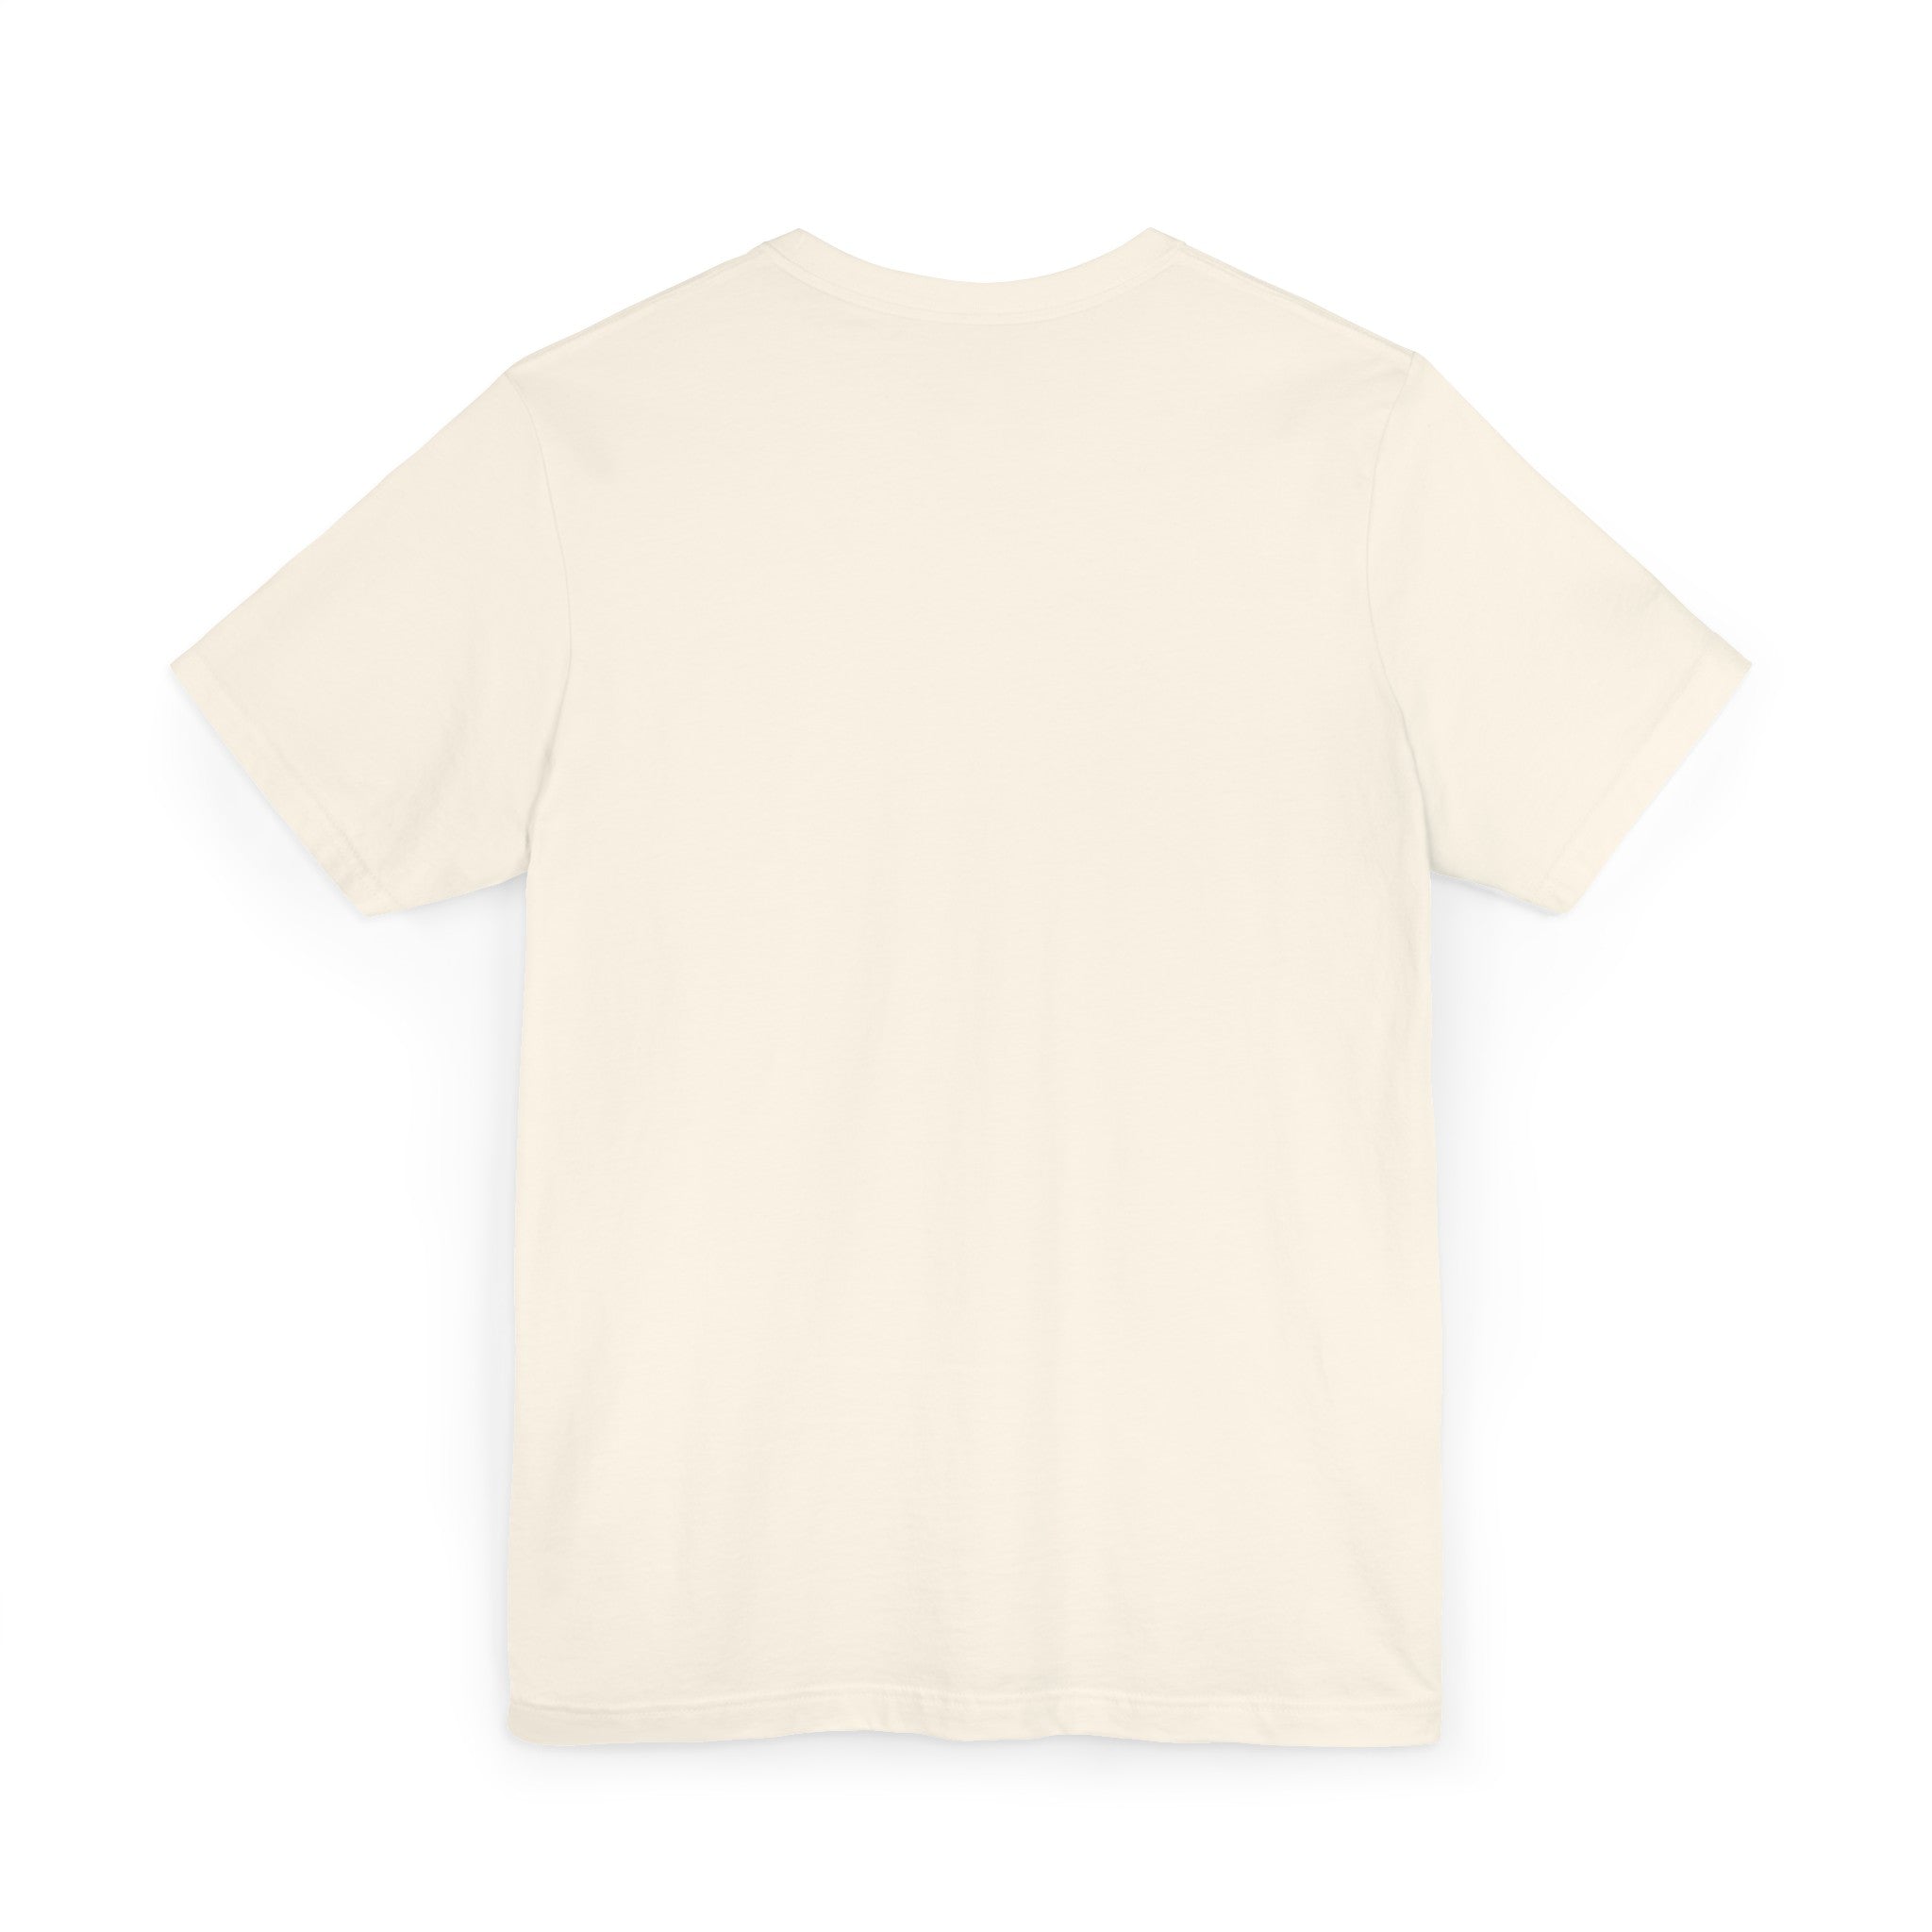 DARK BITTER EXPENSIVE Unisex Jersey T-Shirt